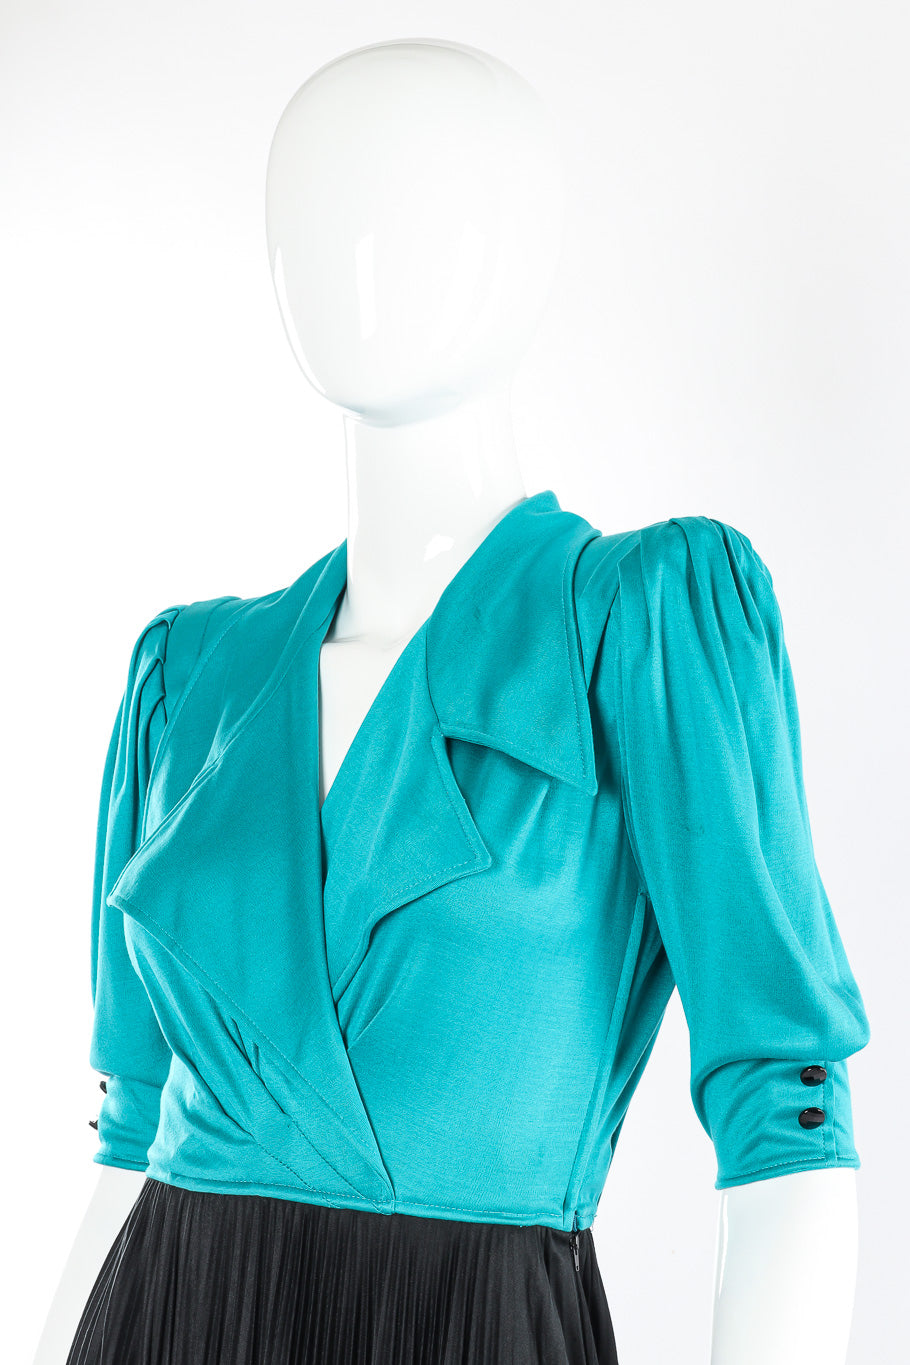 Wrap style dress by Emanuel Ungaro mannequin shoulders close  @recessla